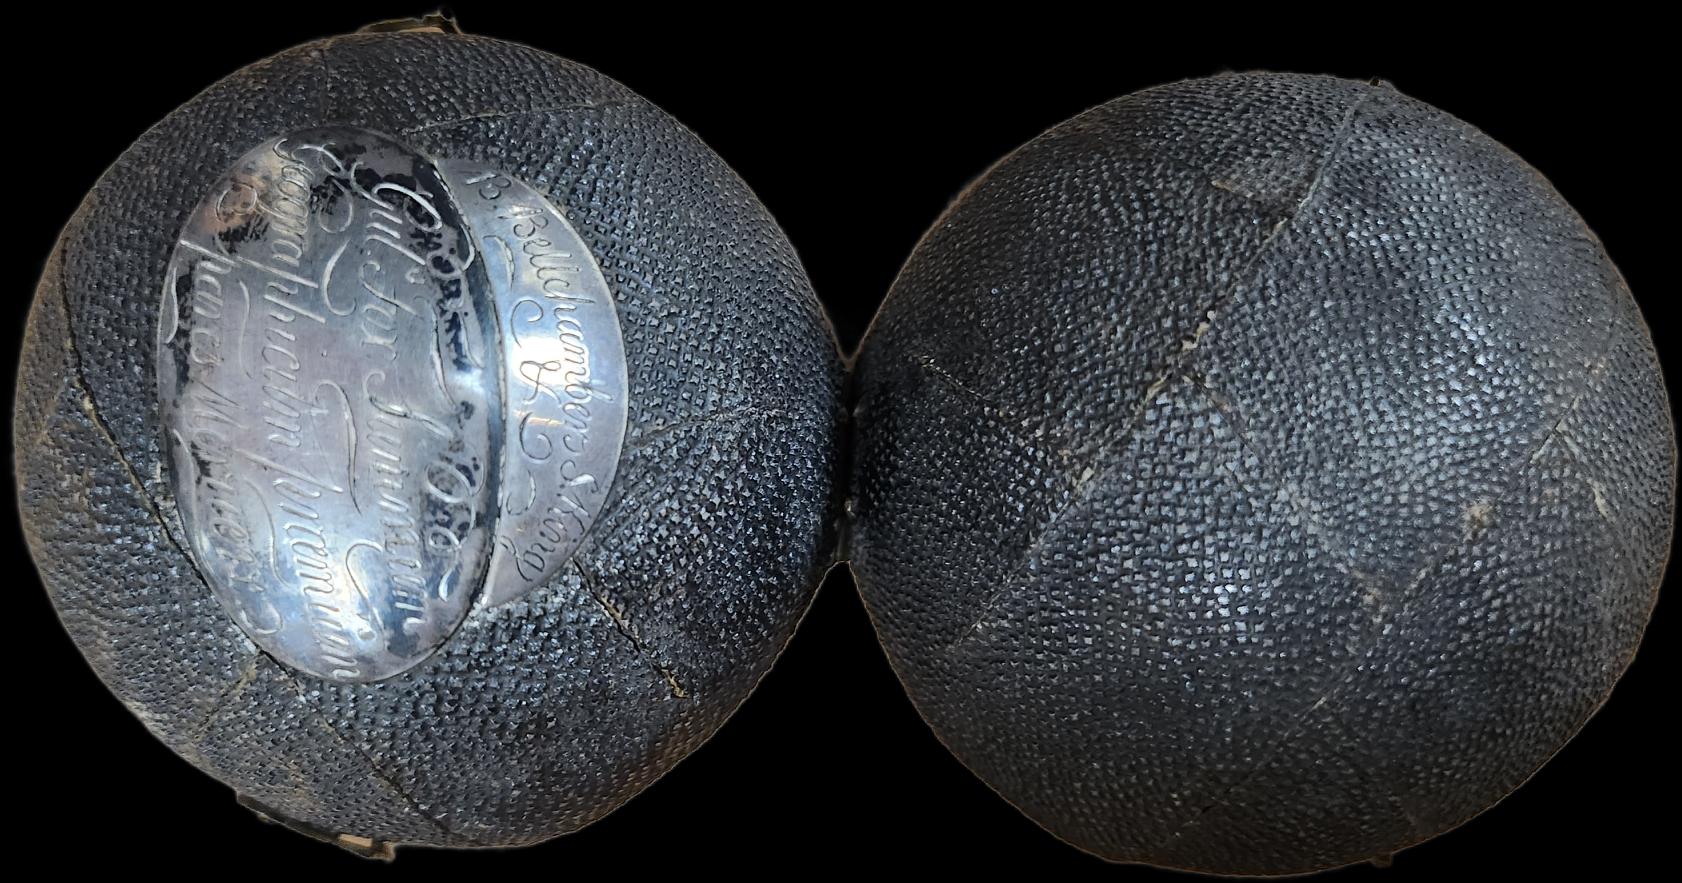 Un globe terrestre miniature de poche dans un étui céleste, 3 pouces / 6,8 cm. Le globe est composé de 12 magnifiques gores vernis et gravés, colorés à la main, qui s'étendent d'un pôle à l'autre. Dans l'étui d'origine en peau de poisson noire avec